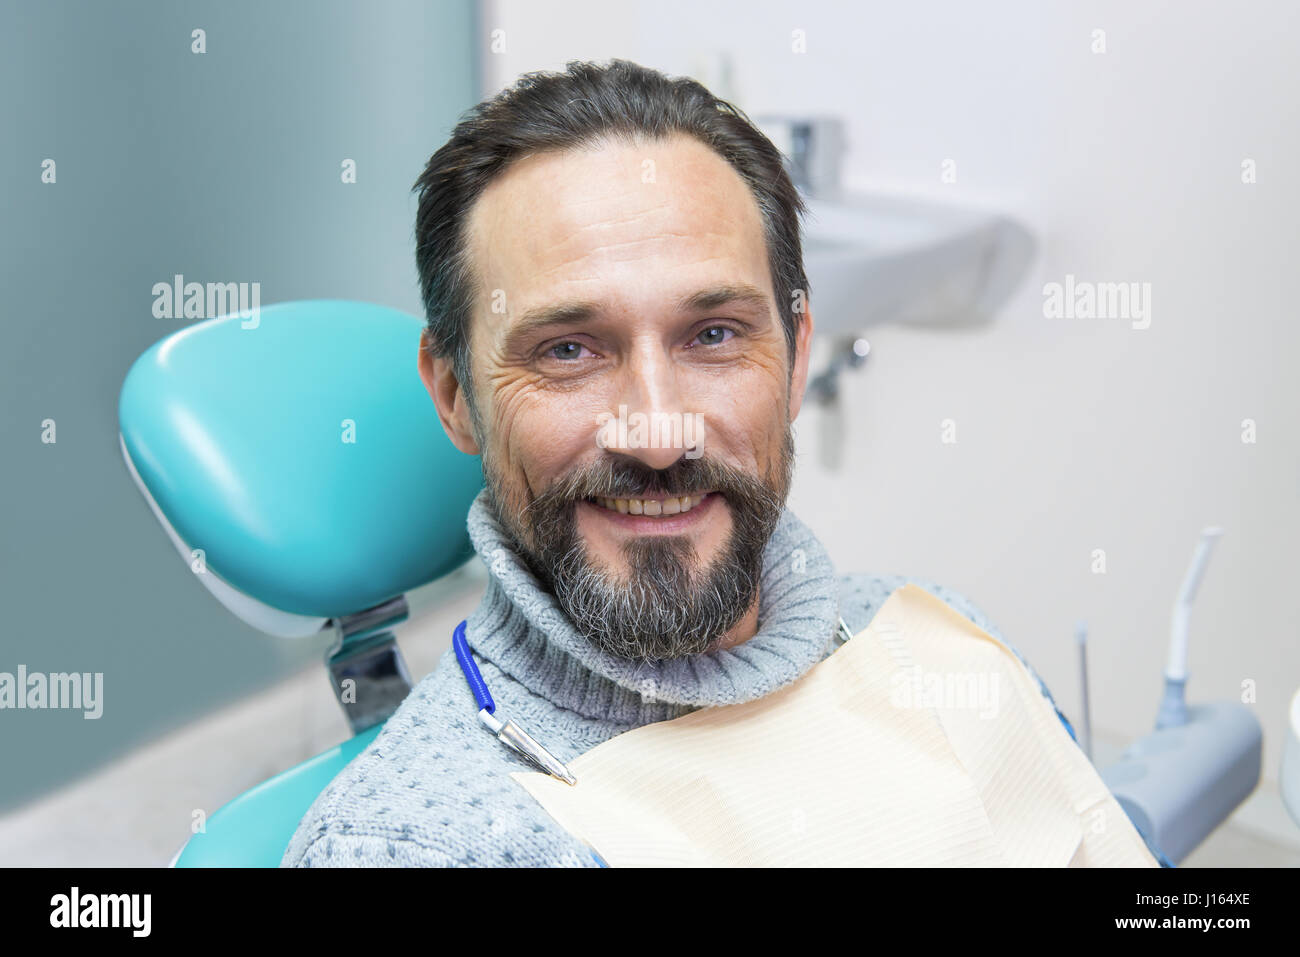 Улыбающийся мужчина в стоматологическом кресле